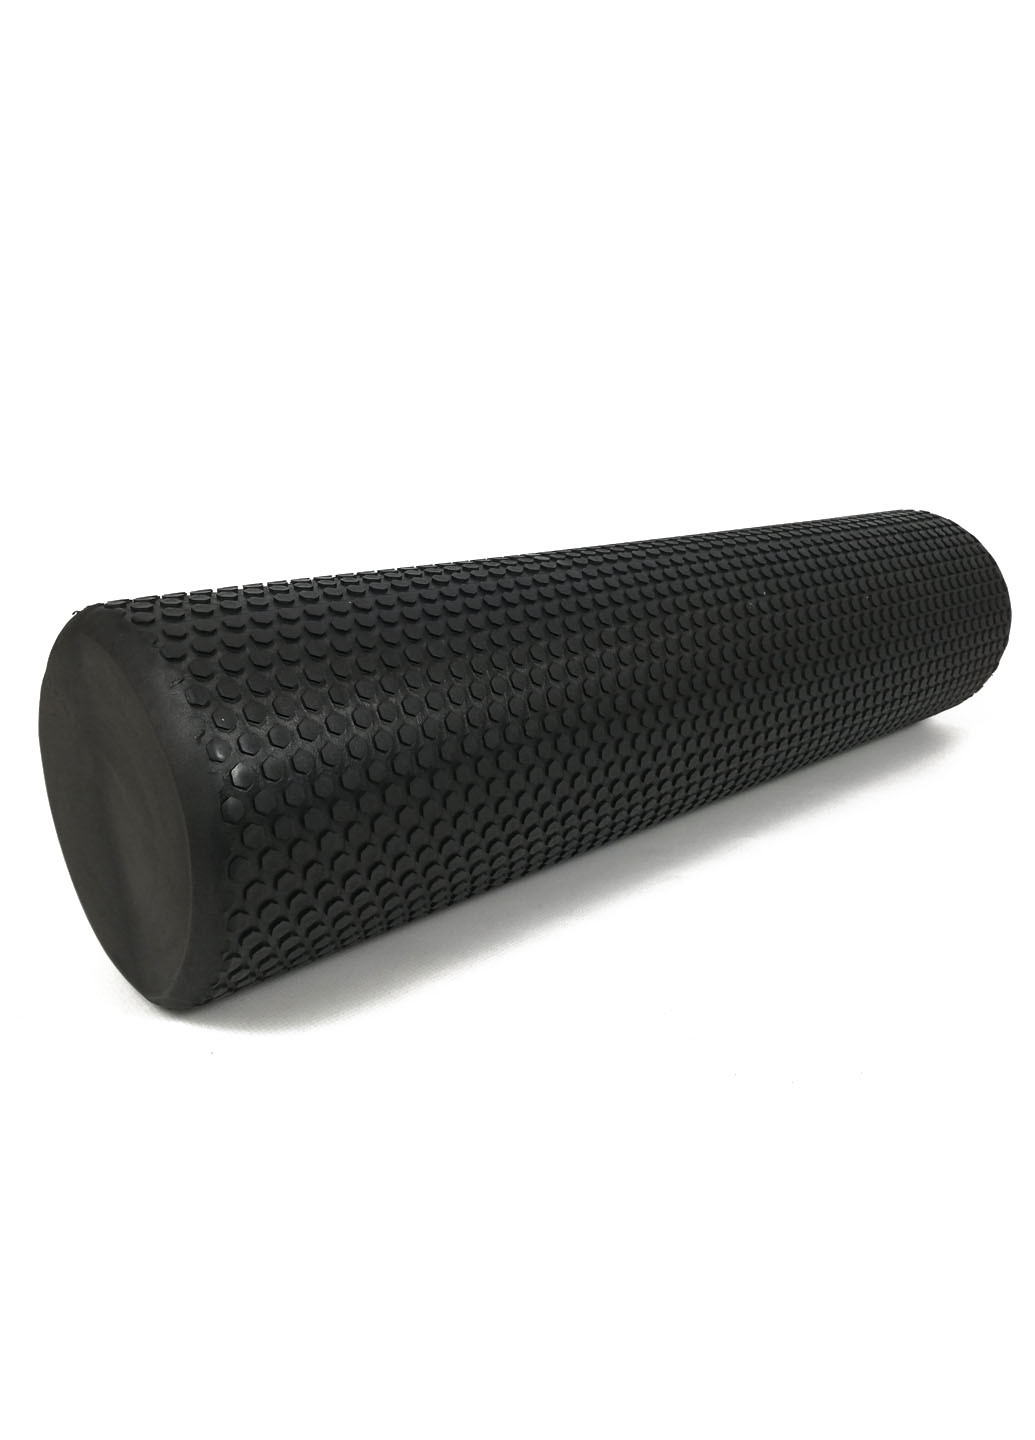 Масажний ролик Foam Roller 60 см чорний (легкий і м'який ролер-валик для йоги, масажу всього тіла: рук, ніг, спини) EasyFit (237657527)